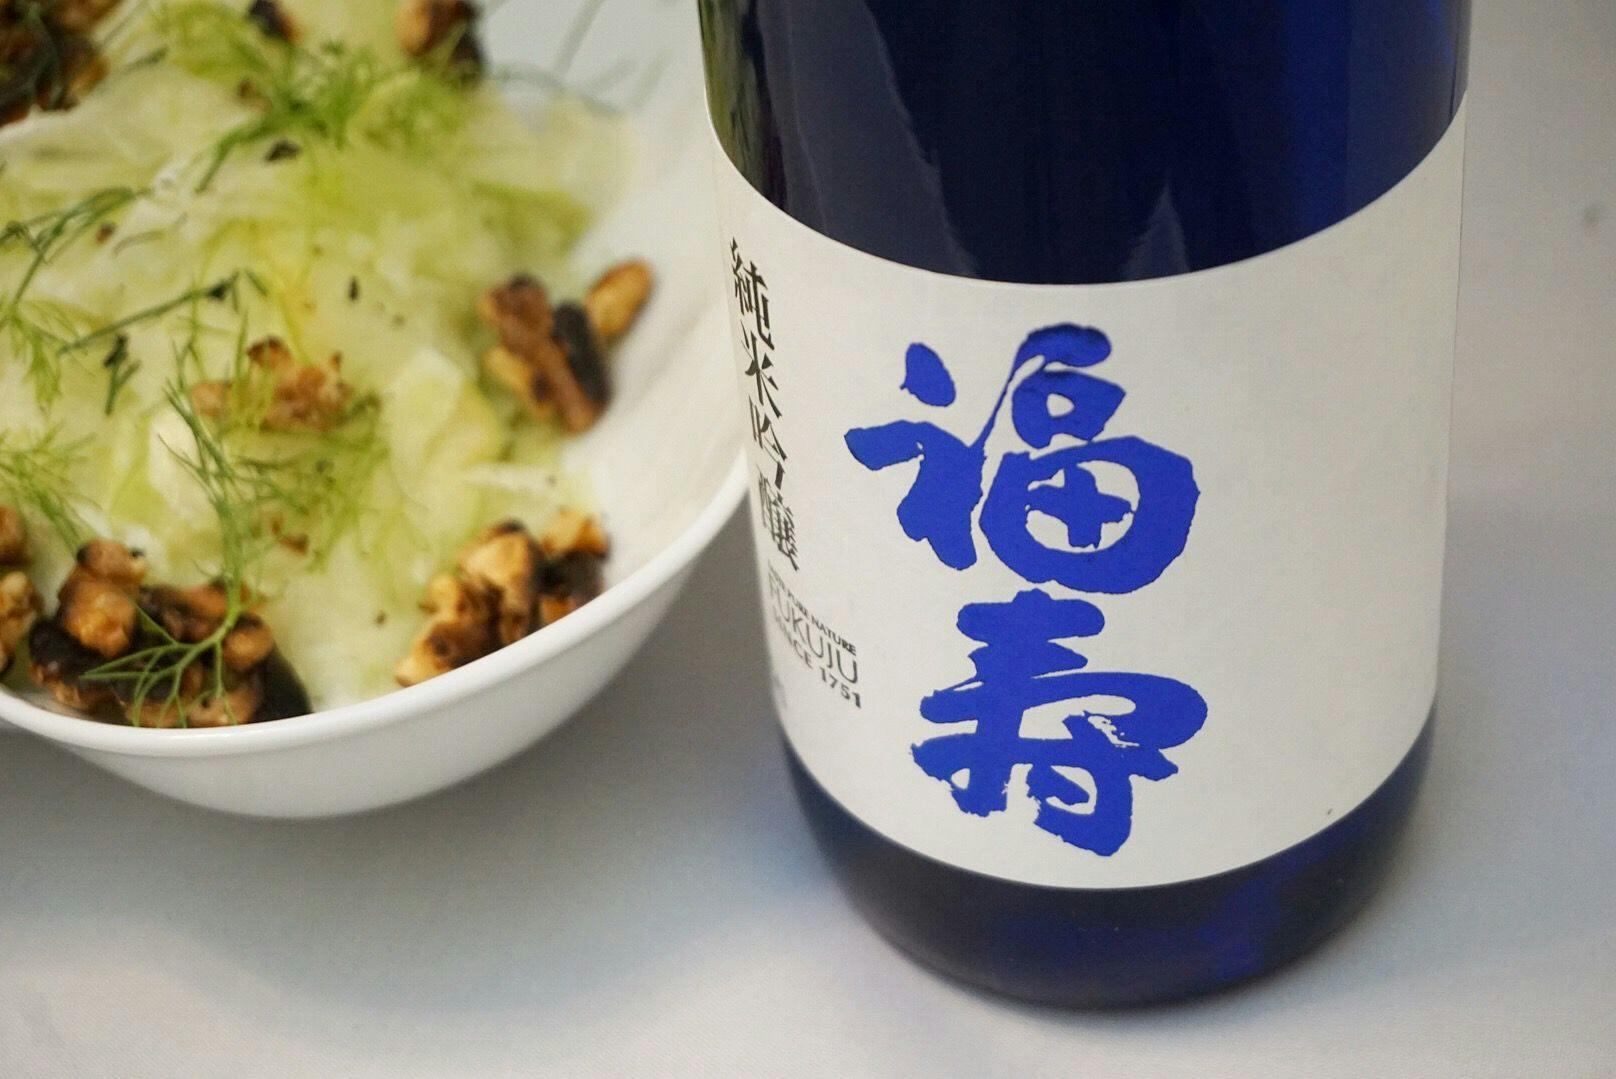 Tippsy recipe and Fukuju “Blue”